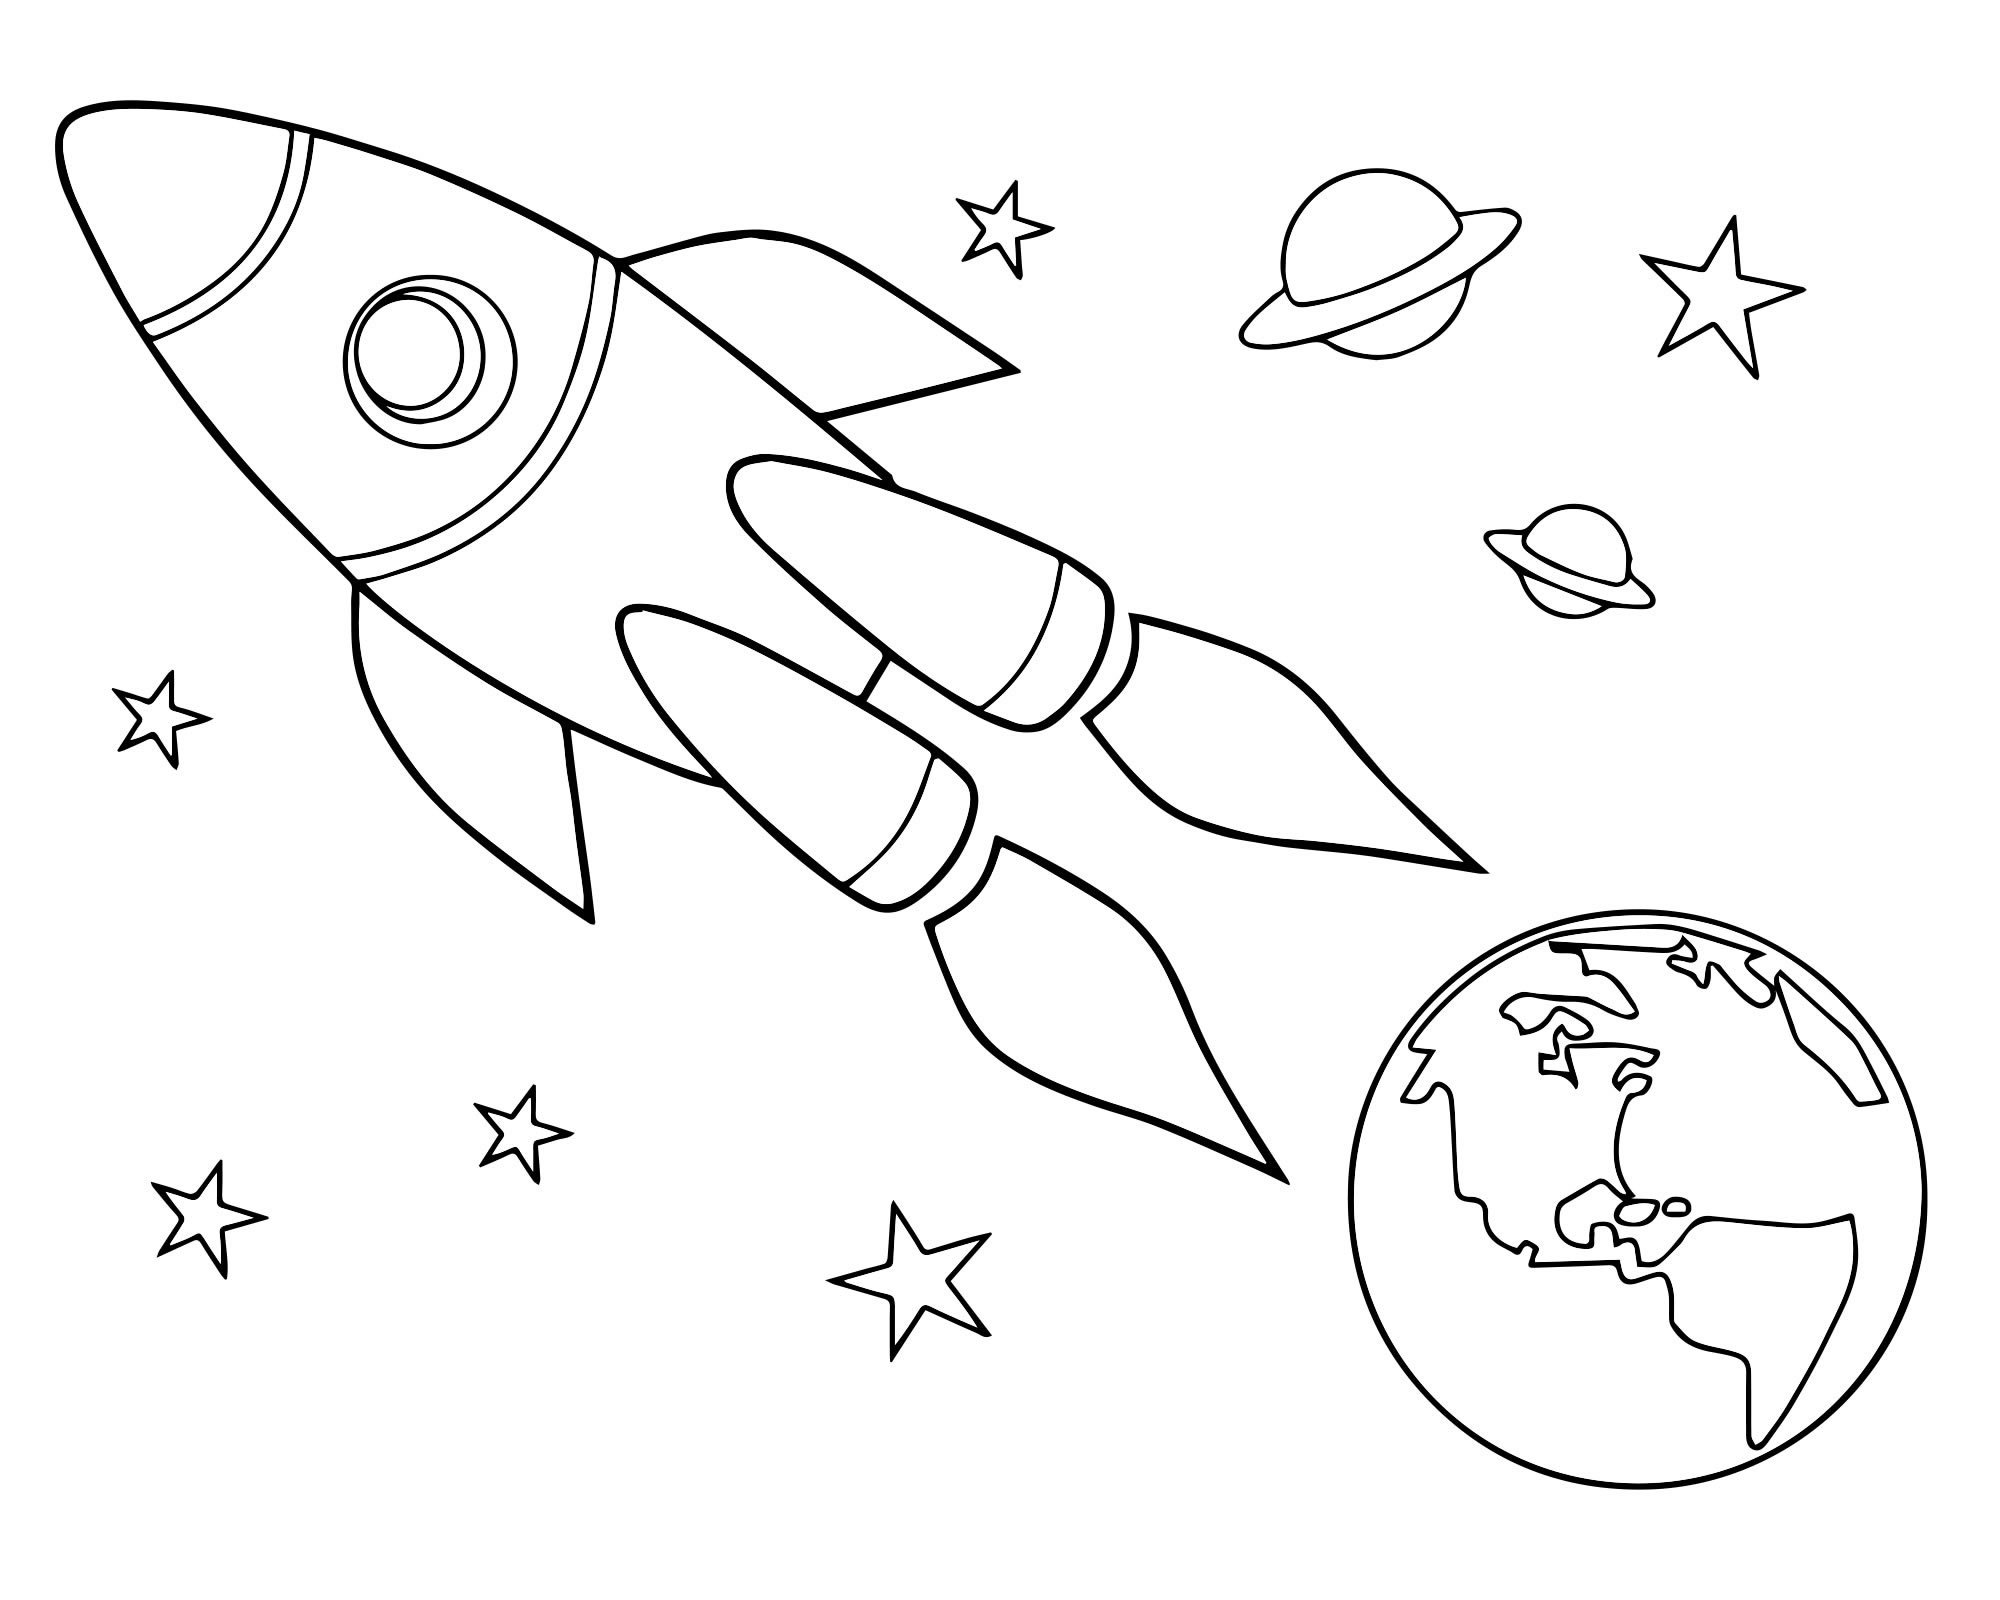 Детские раскраски ко дню космонавтики. Космос раскраска для детей. Раскраска день космонавтики для детей. Трафареты на тему космоса для детей. Раскраска для малышей. Космос.